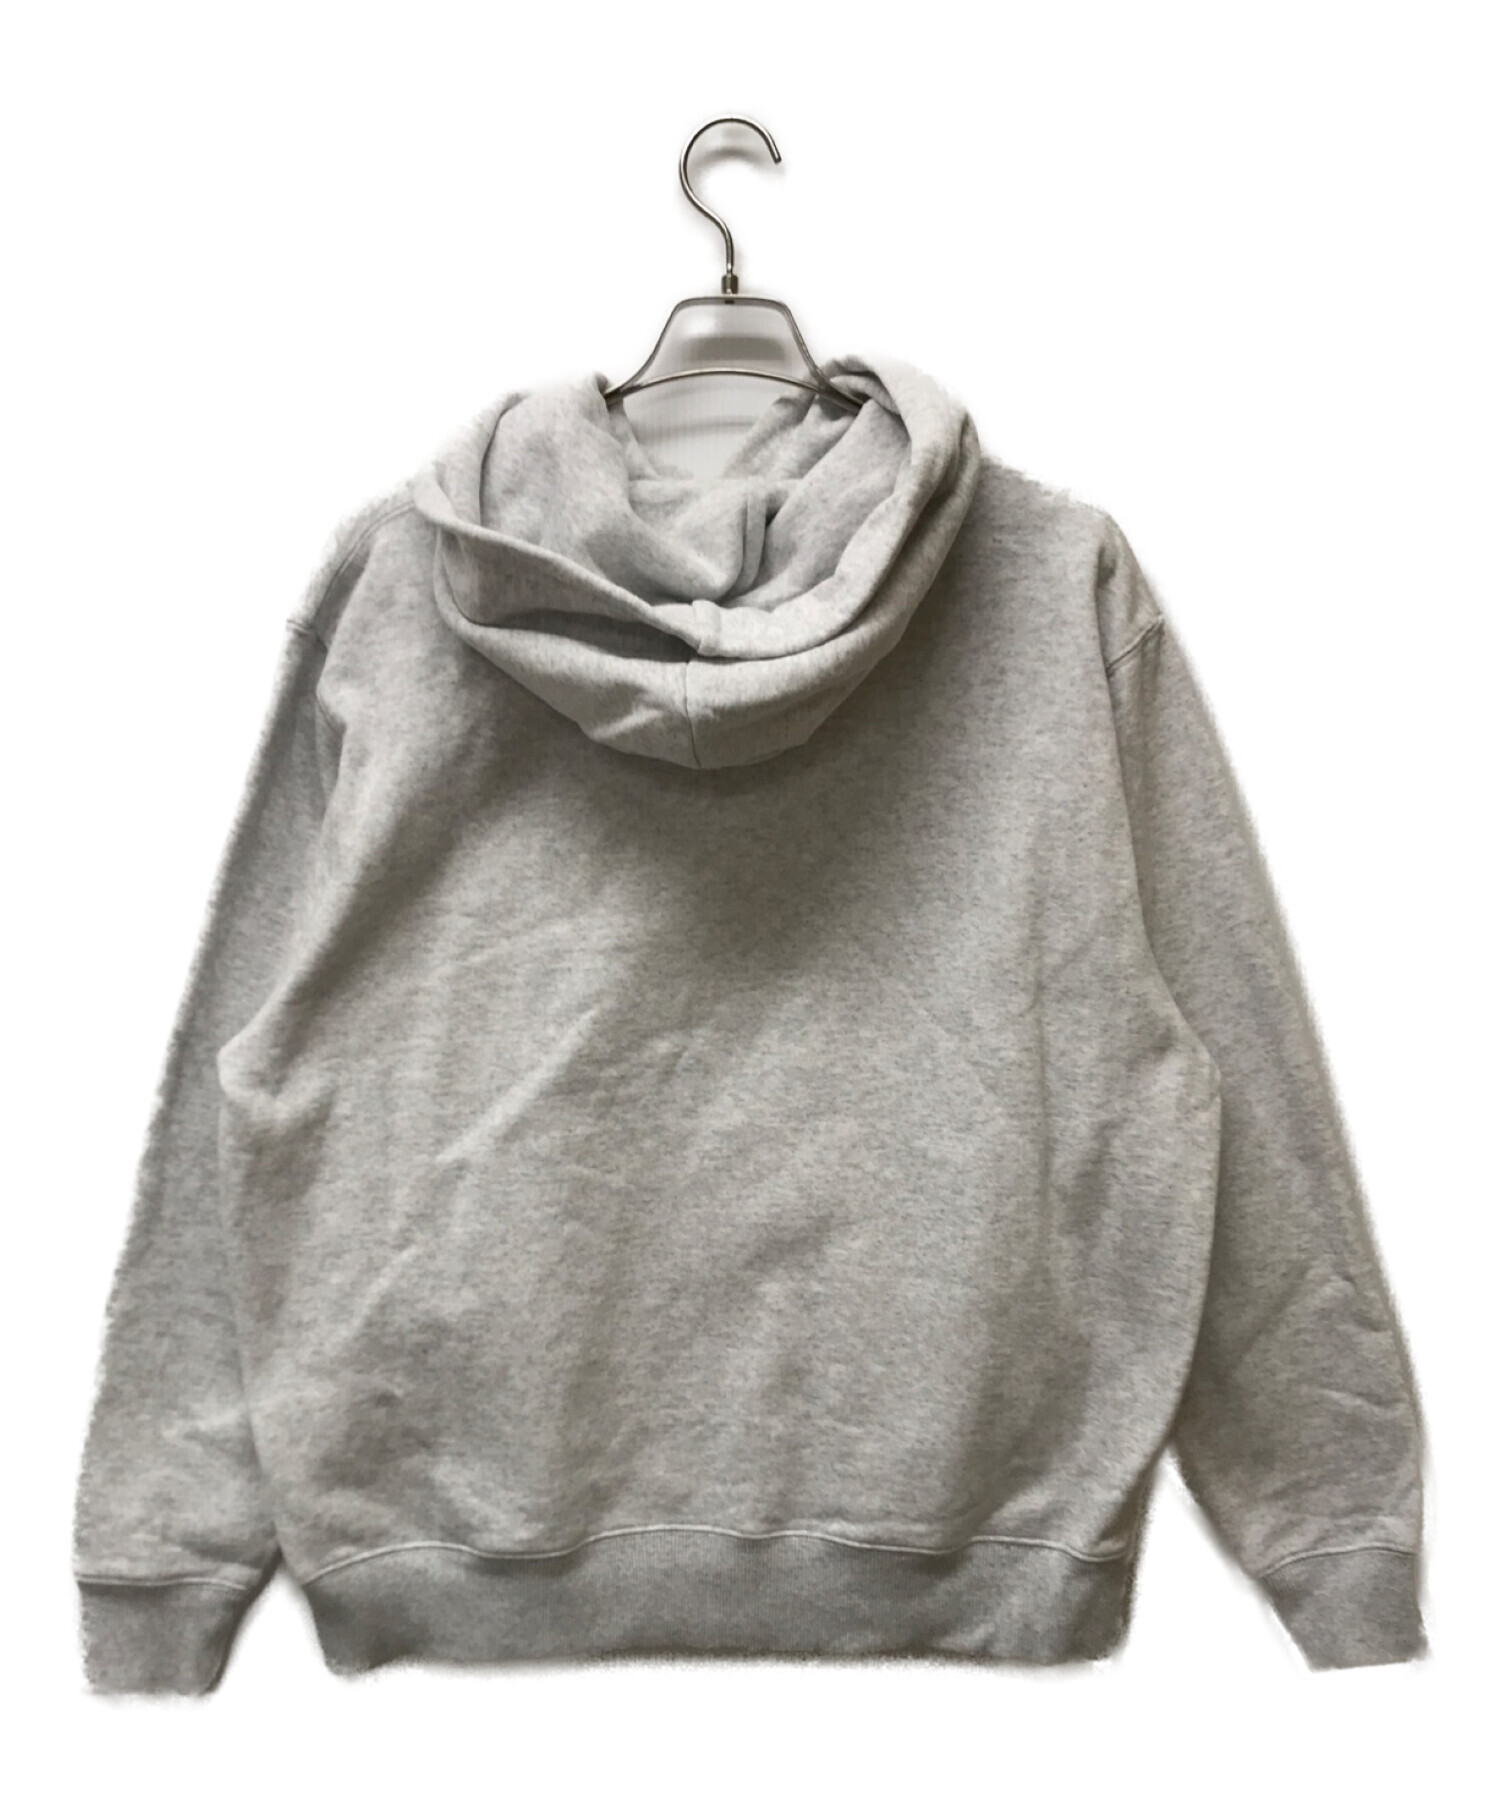 13,750円BoTT OG Logo pullover hoodie サイズL ボット